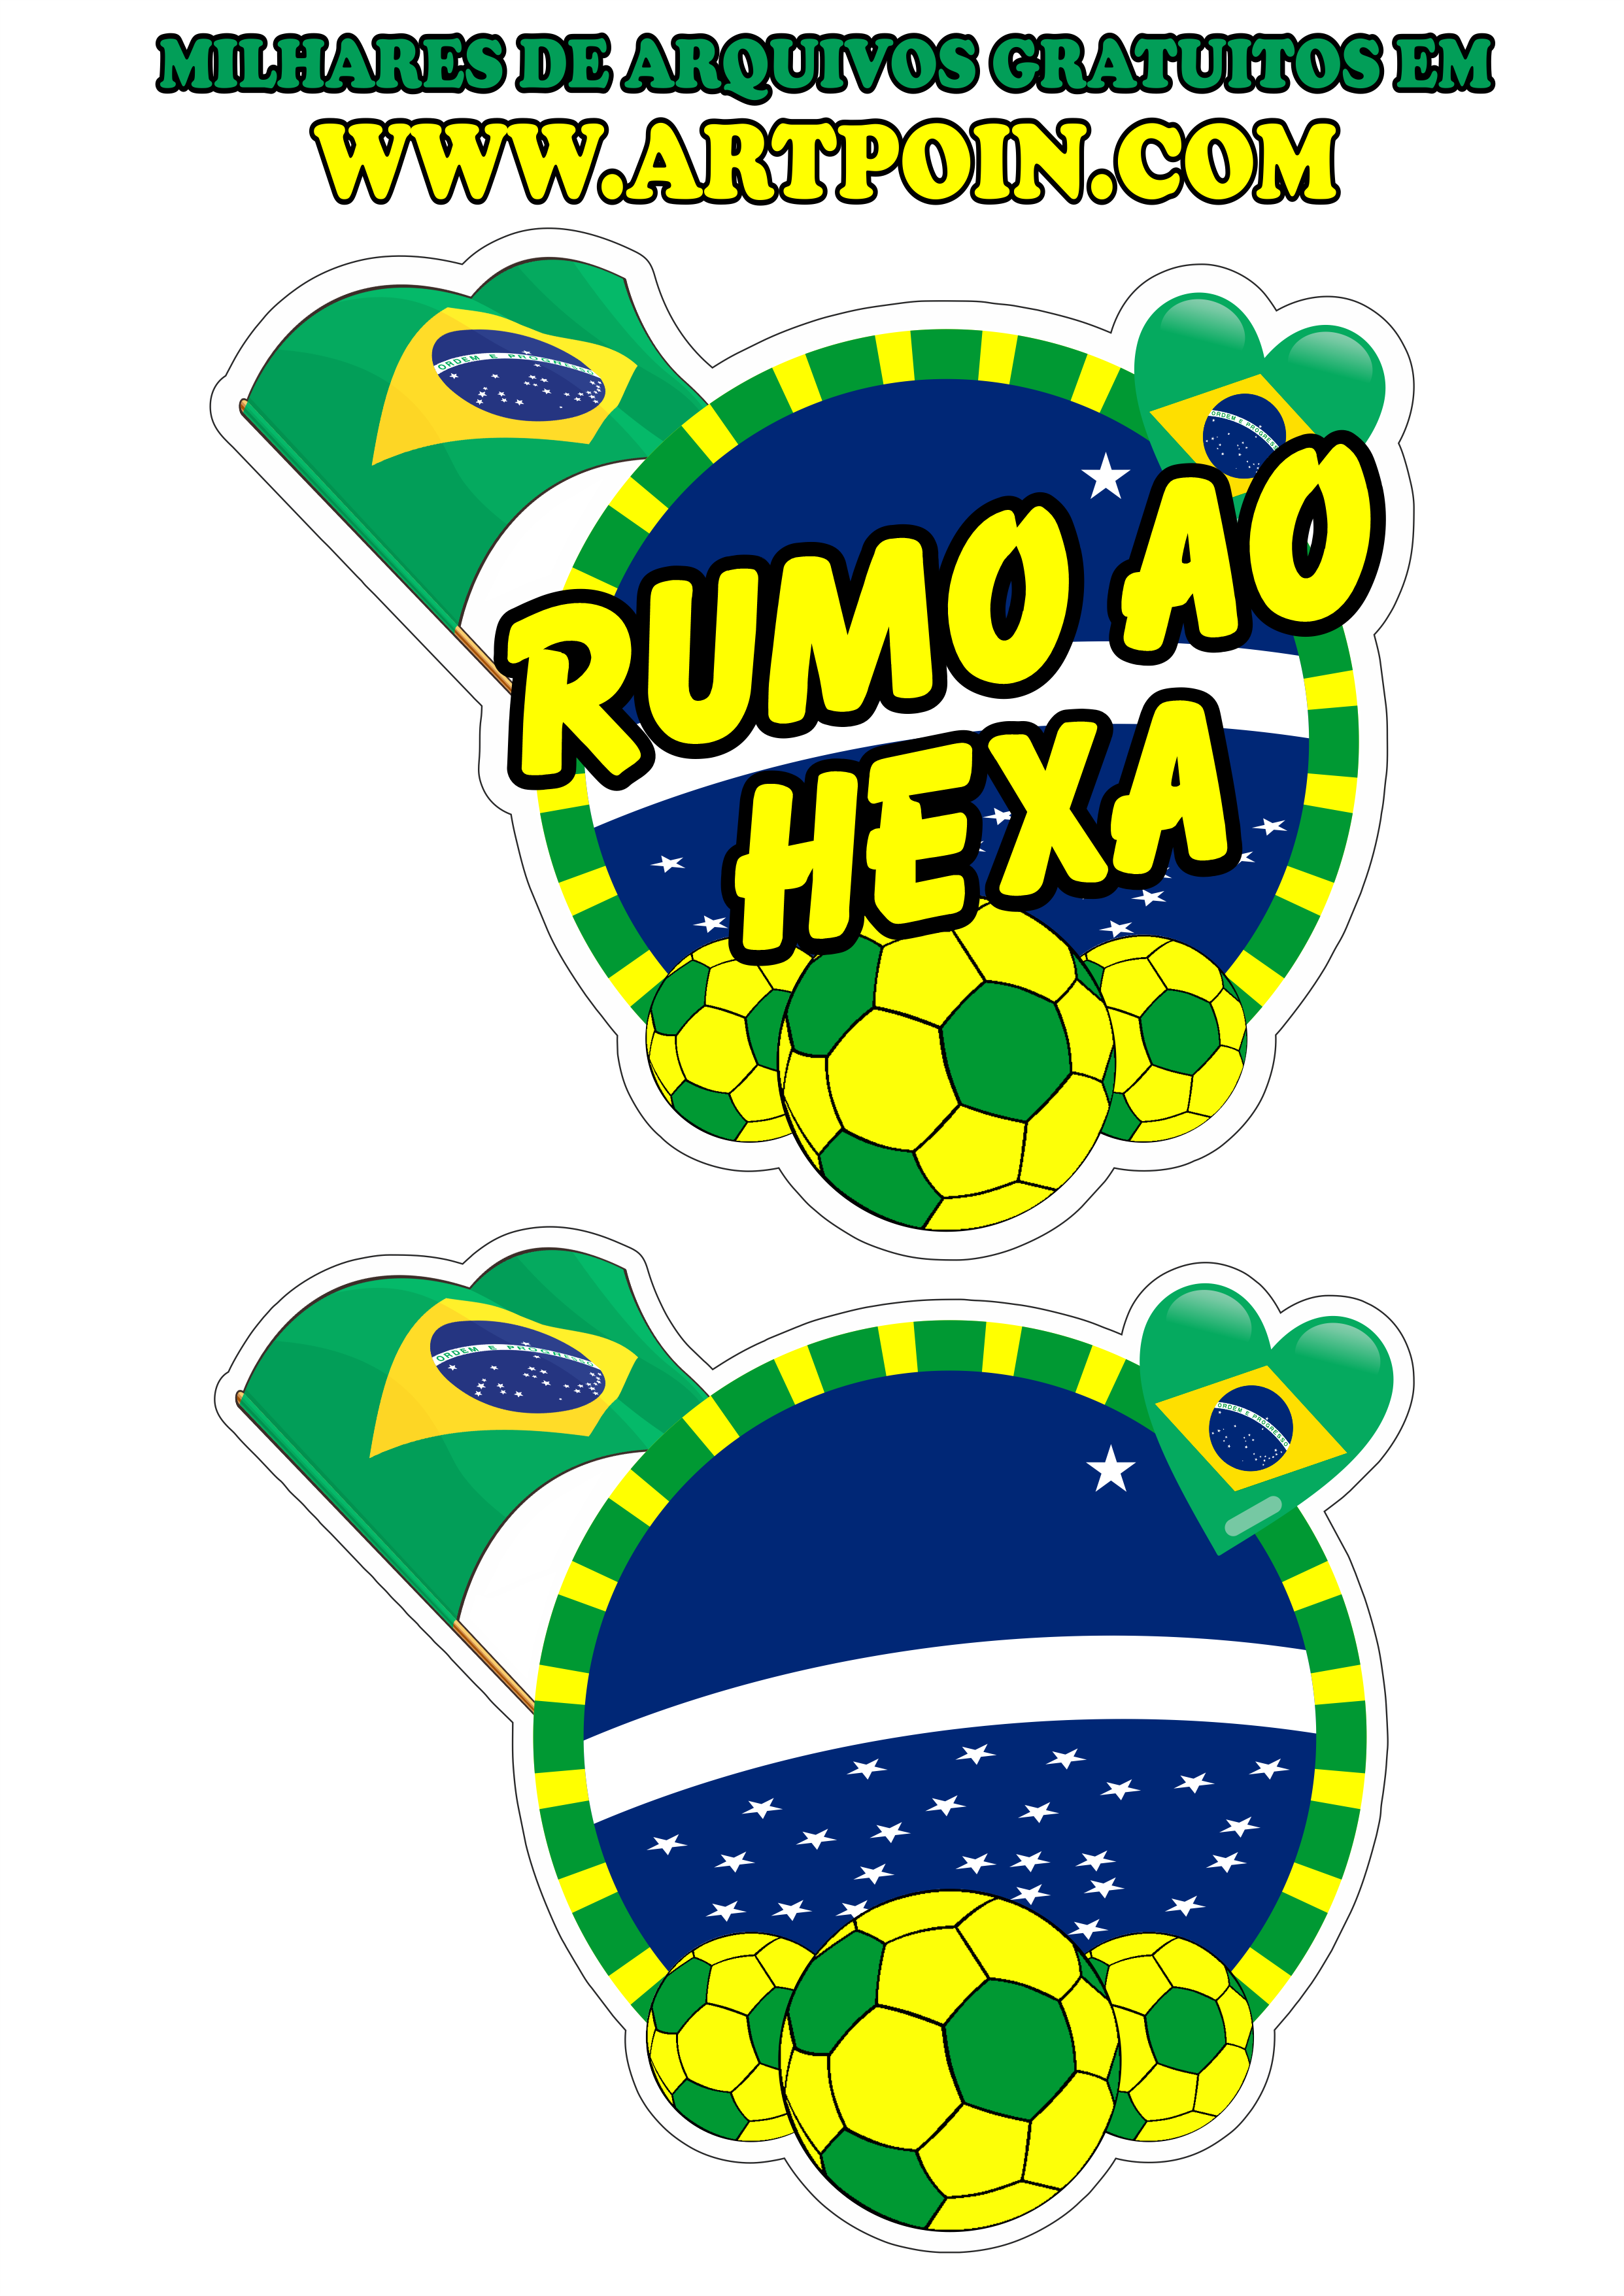 Copa do mundo 2022 simbolo estilo logomarca para decoração brasil rumo ao hexa png